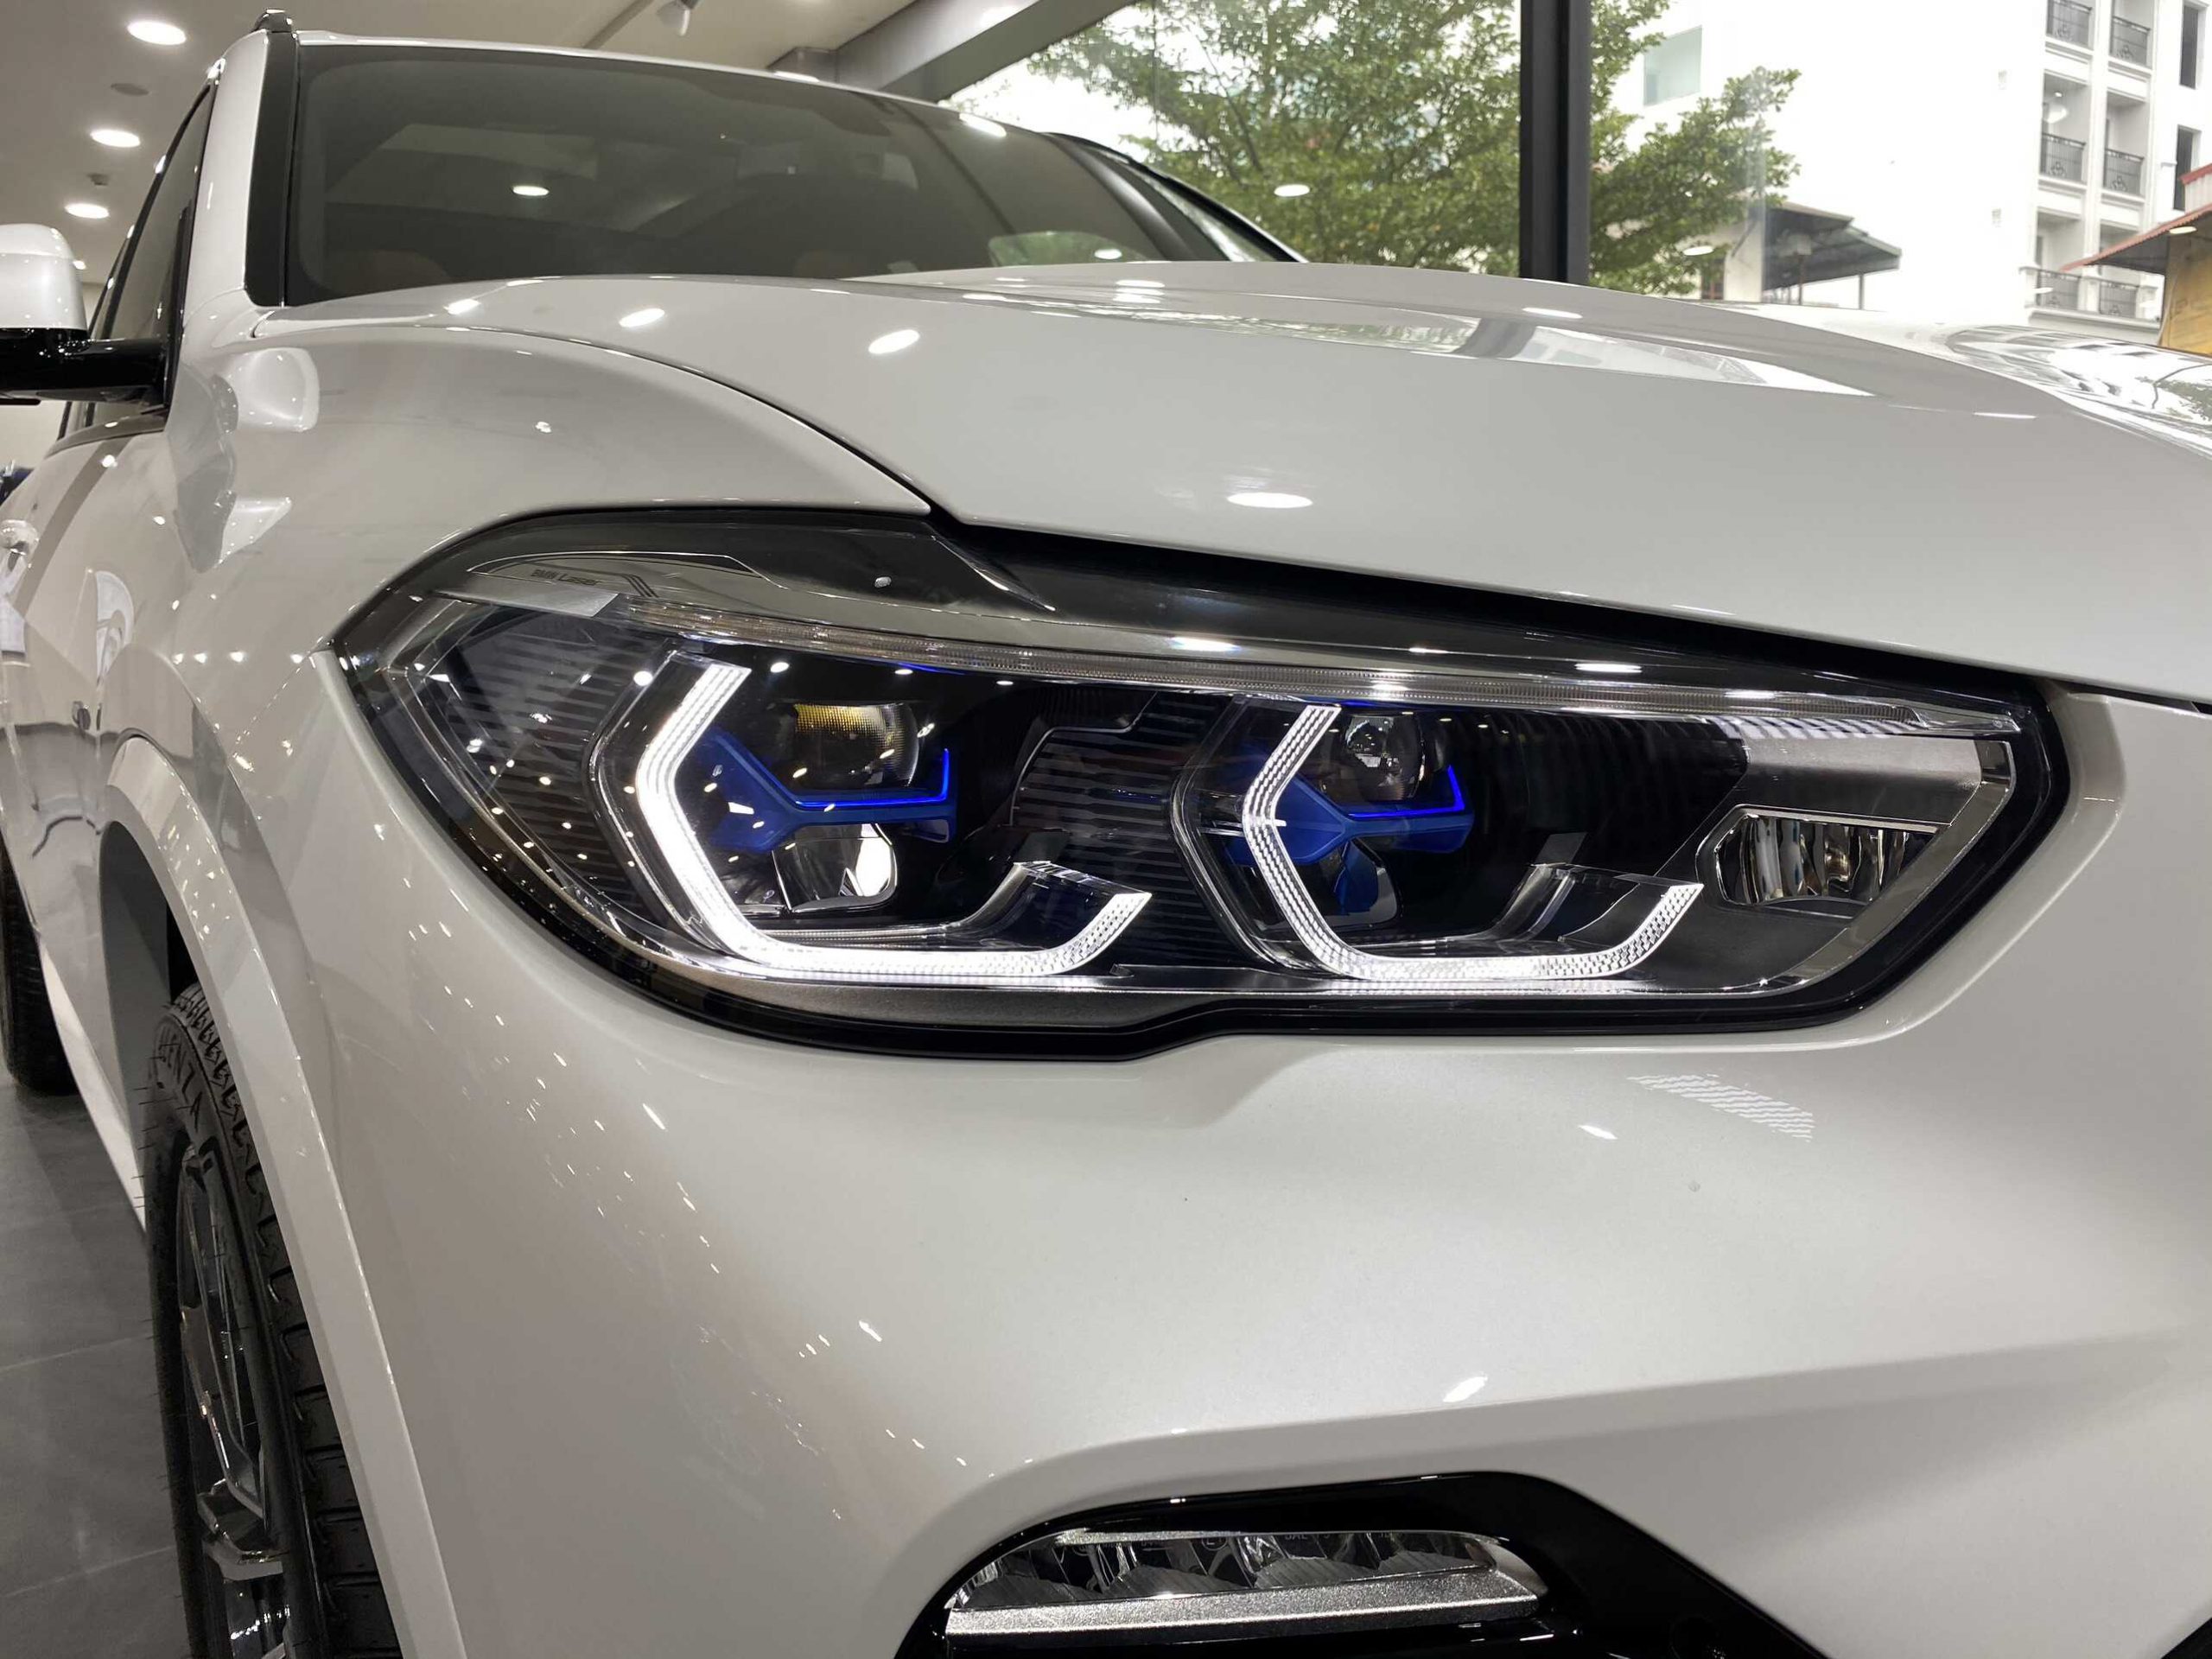 Cụm đèn pha BMW Laserlight nổi bật và sang trọng.